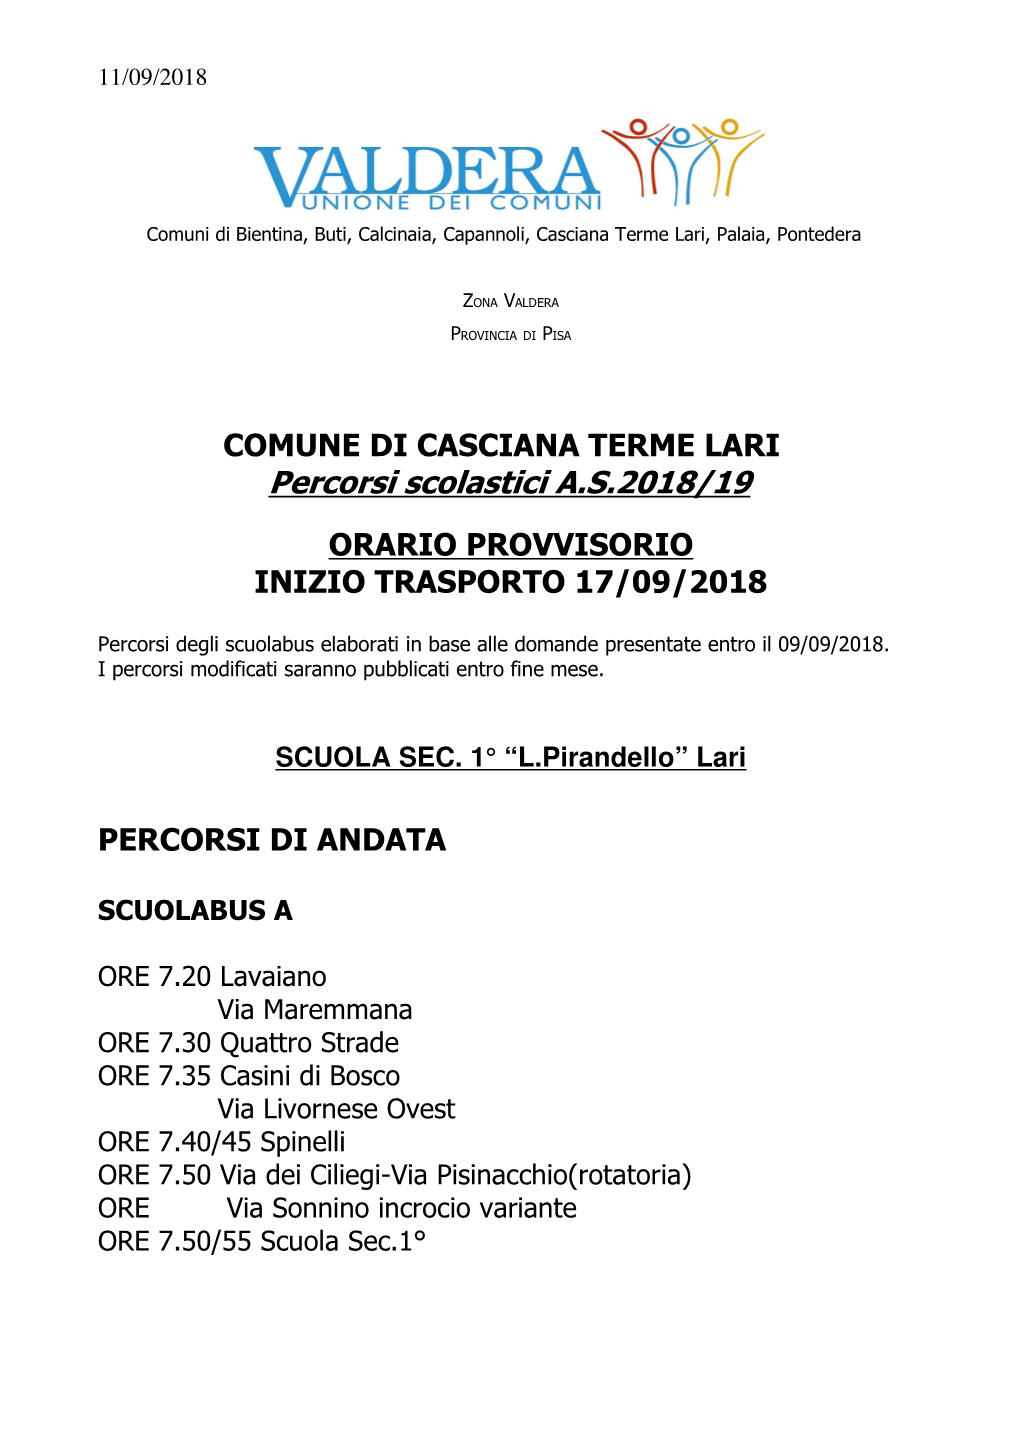 COMUNE DI CASCIANA TERME LARI Percorsi Scolastici A.S.2018/19